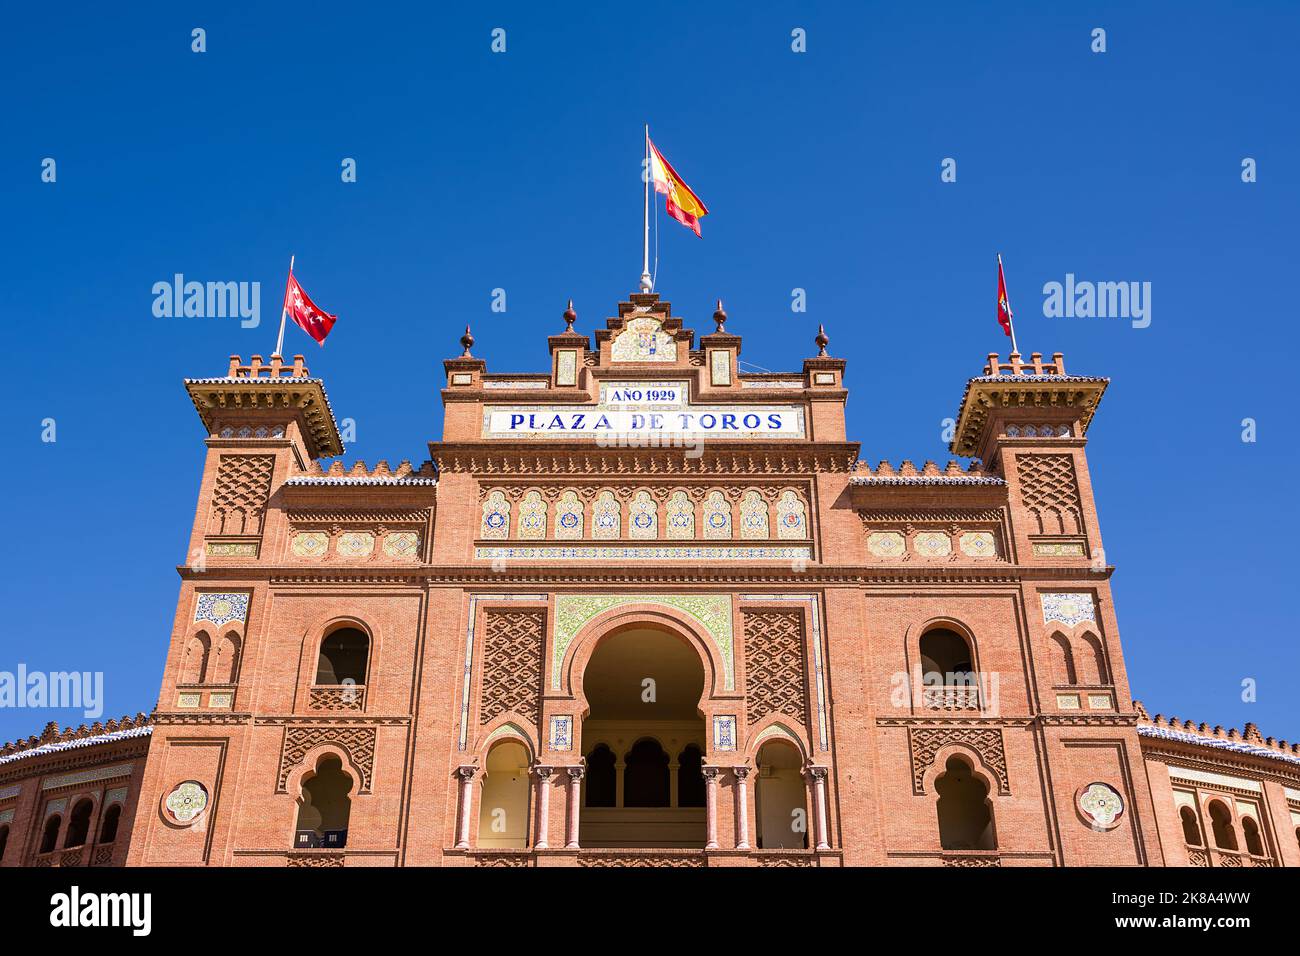 Detalle de la fachada de la Plaza de Toros en Madrid Foto de stock